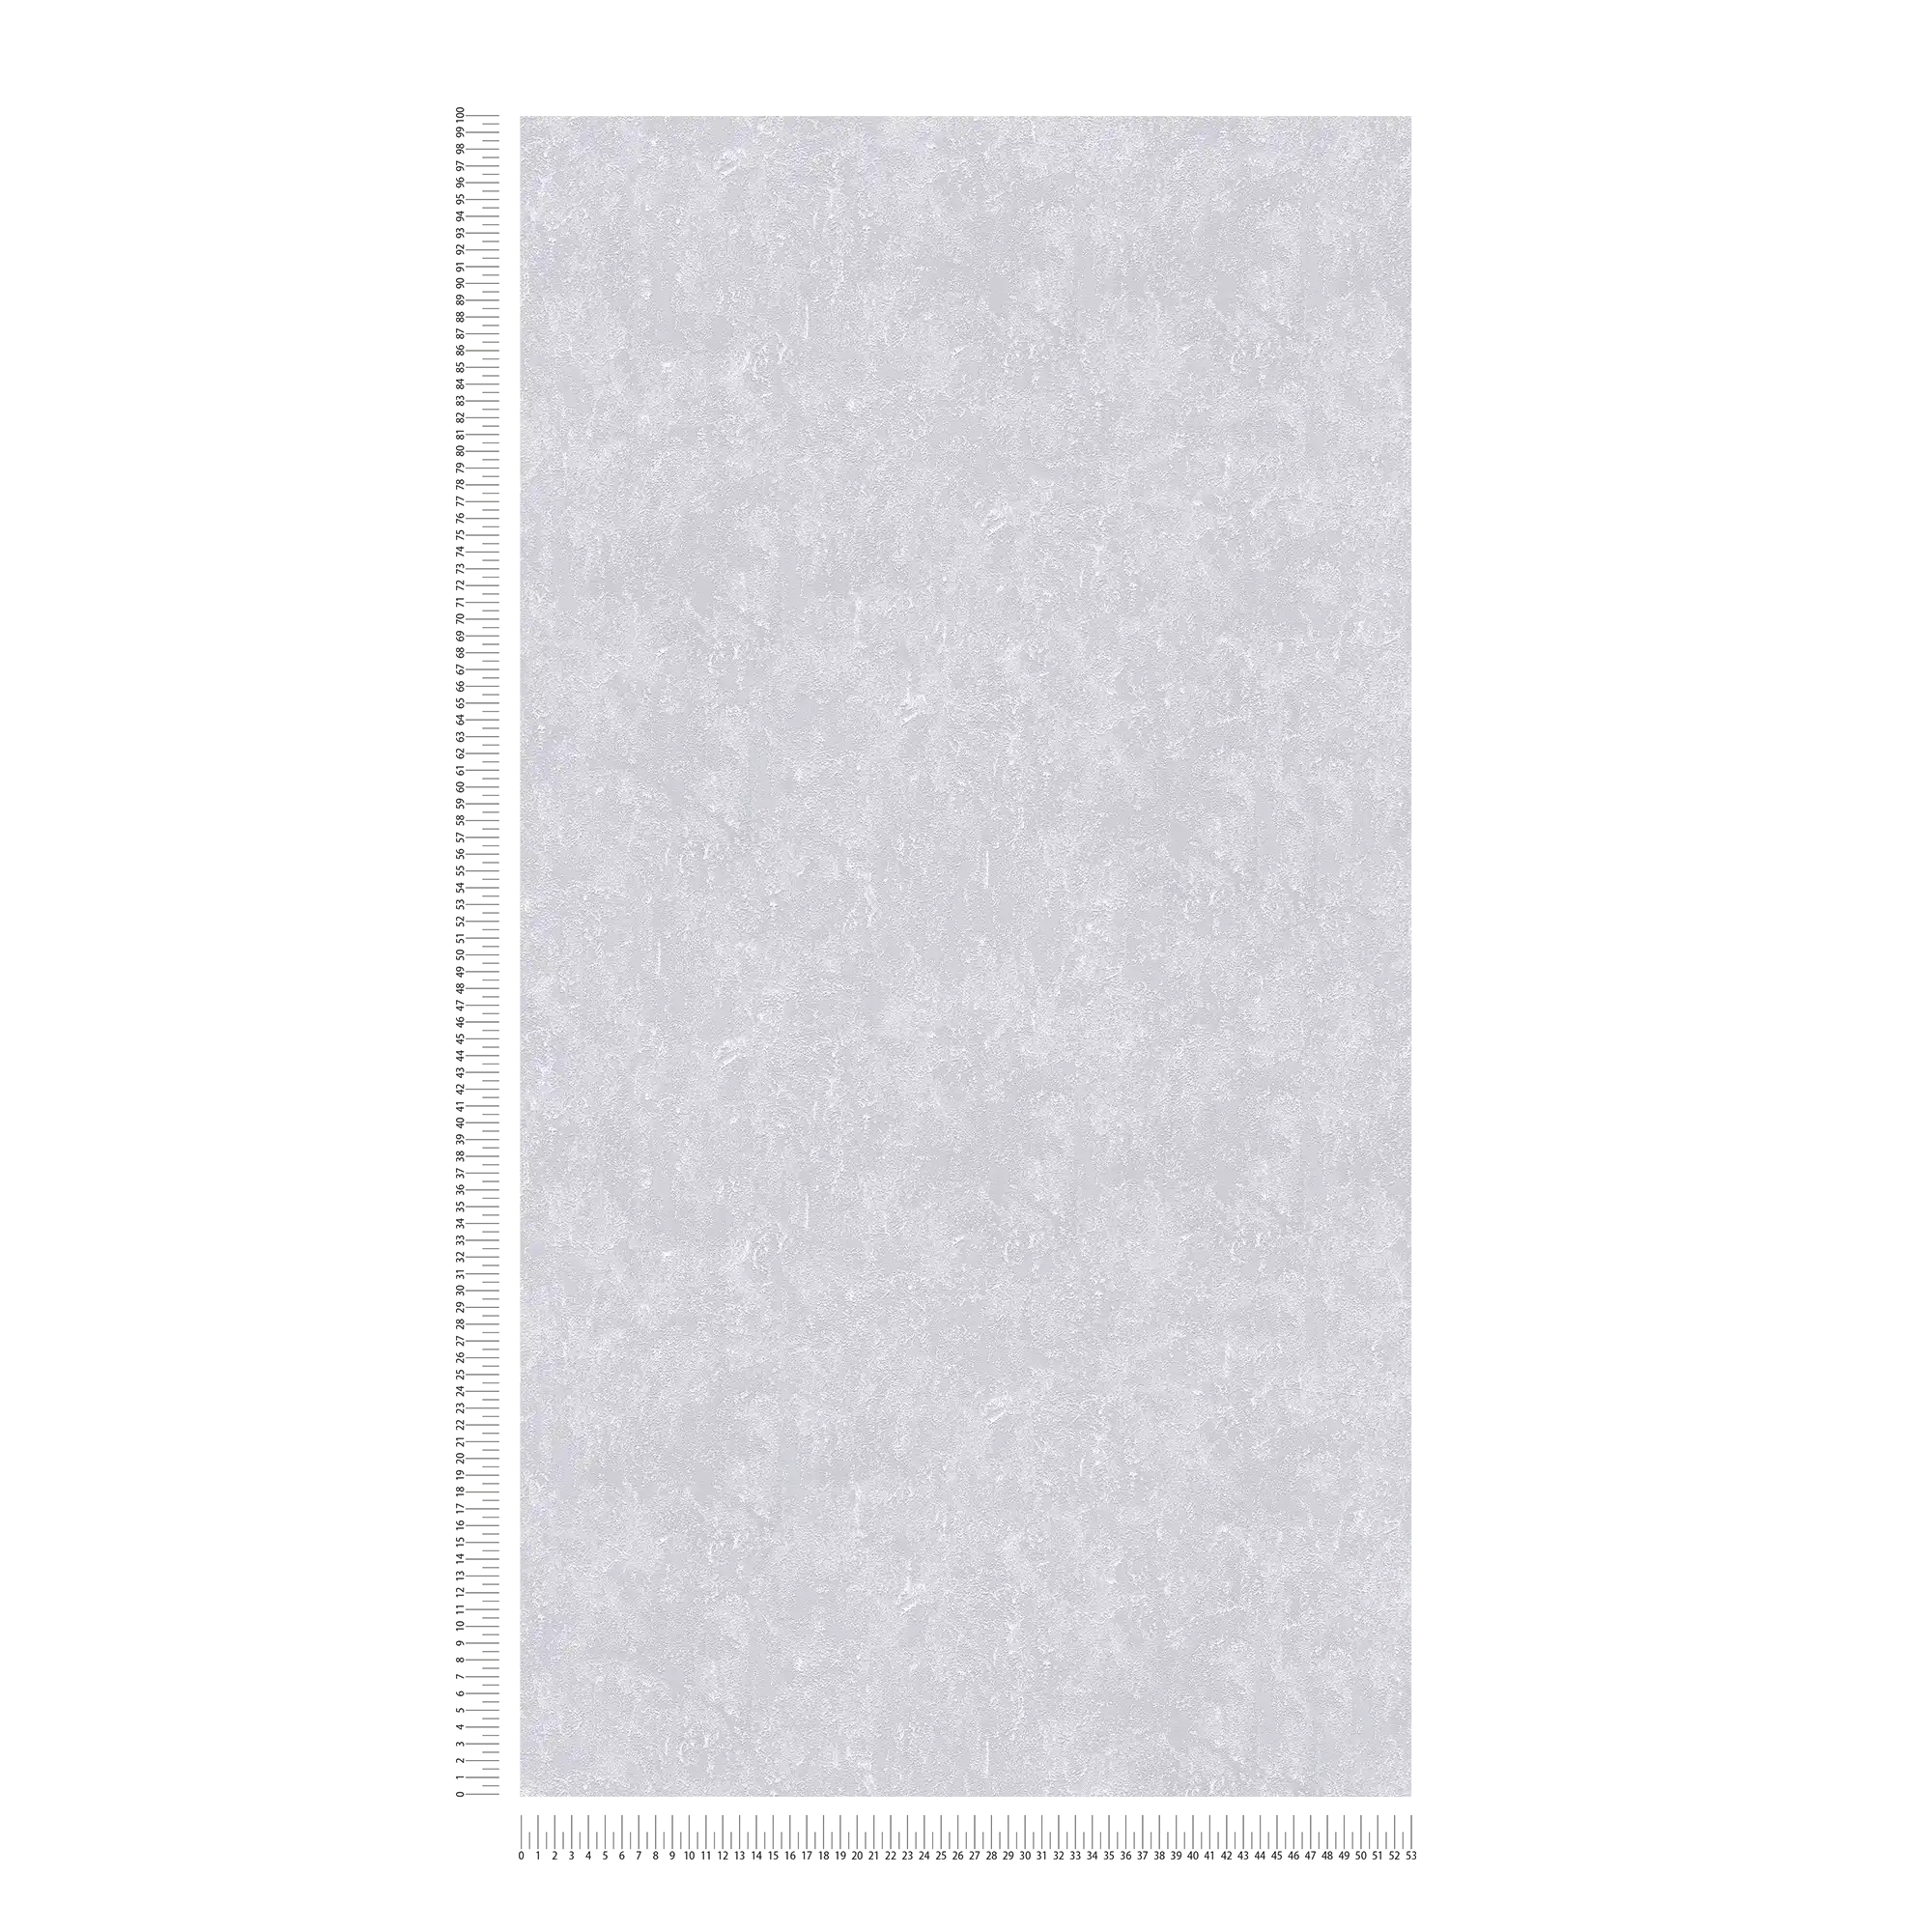             Carta da parati metallizzata grigia lucida con struttura in rilievo
        